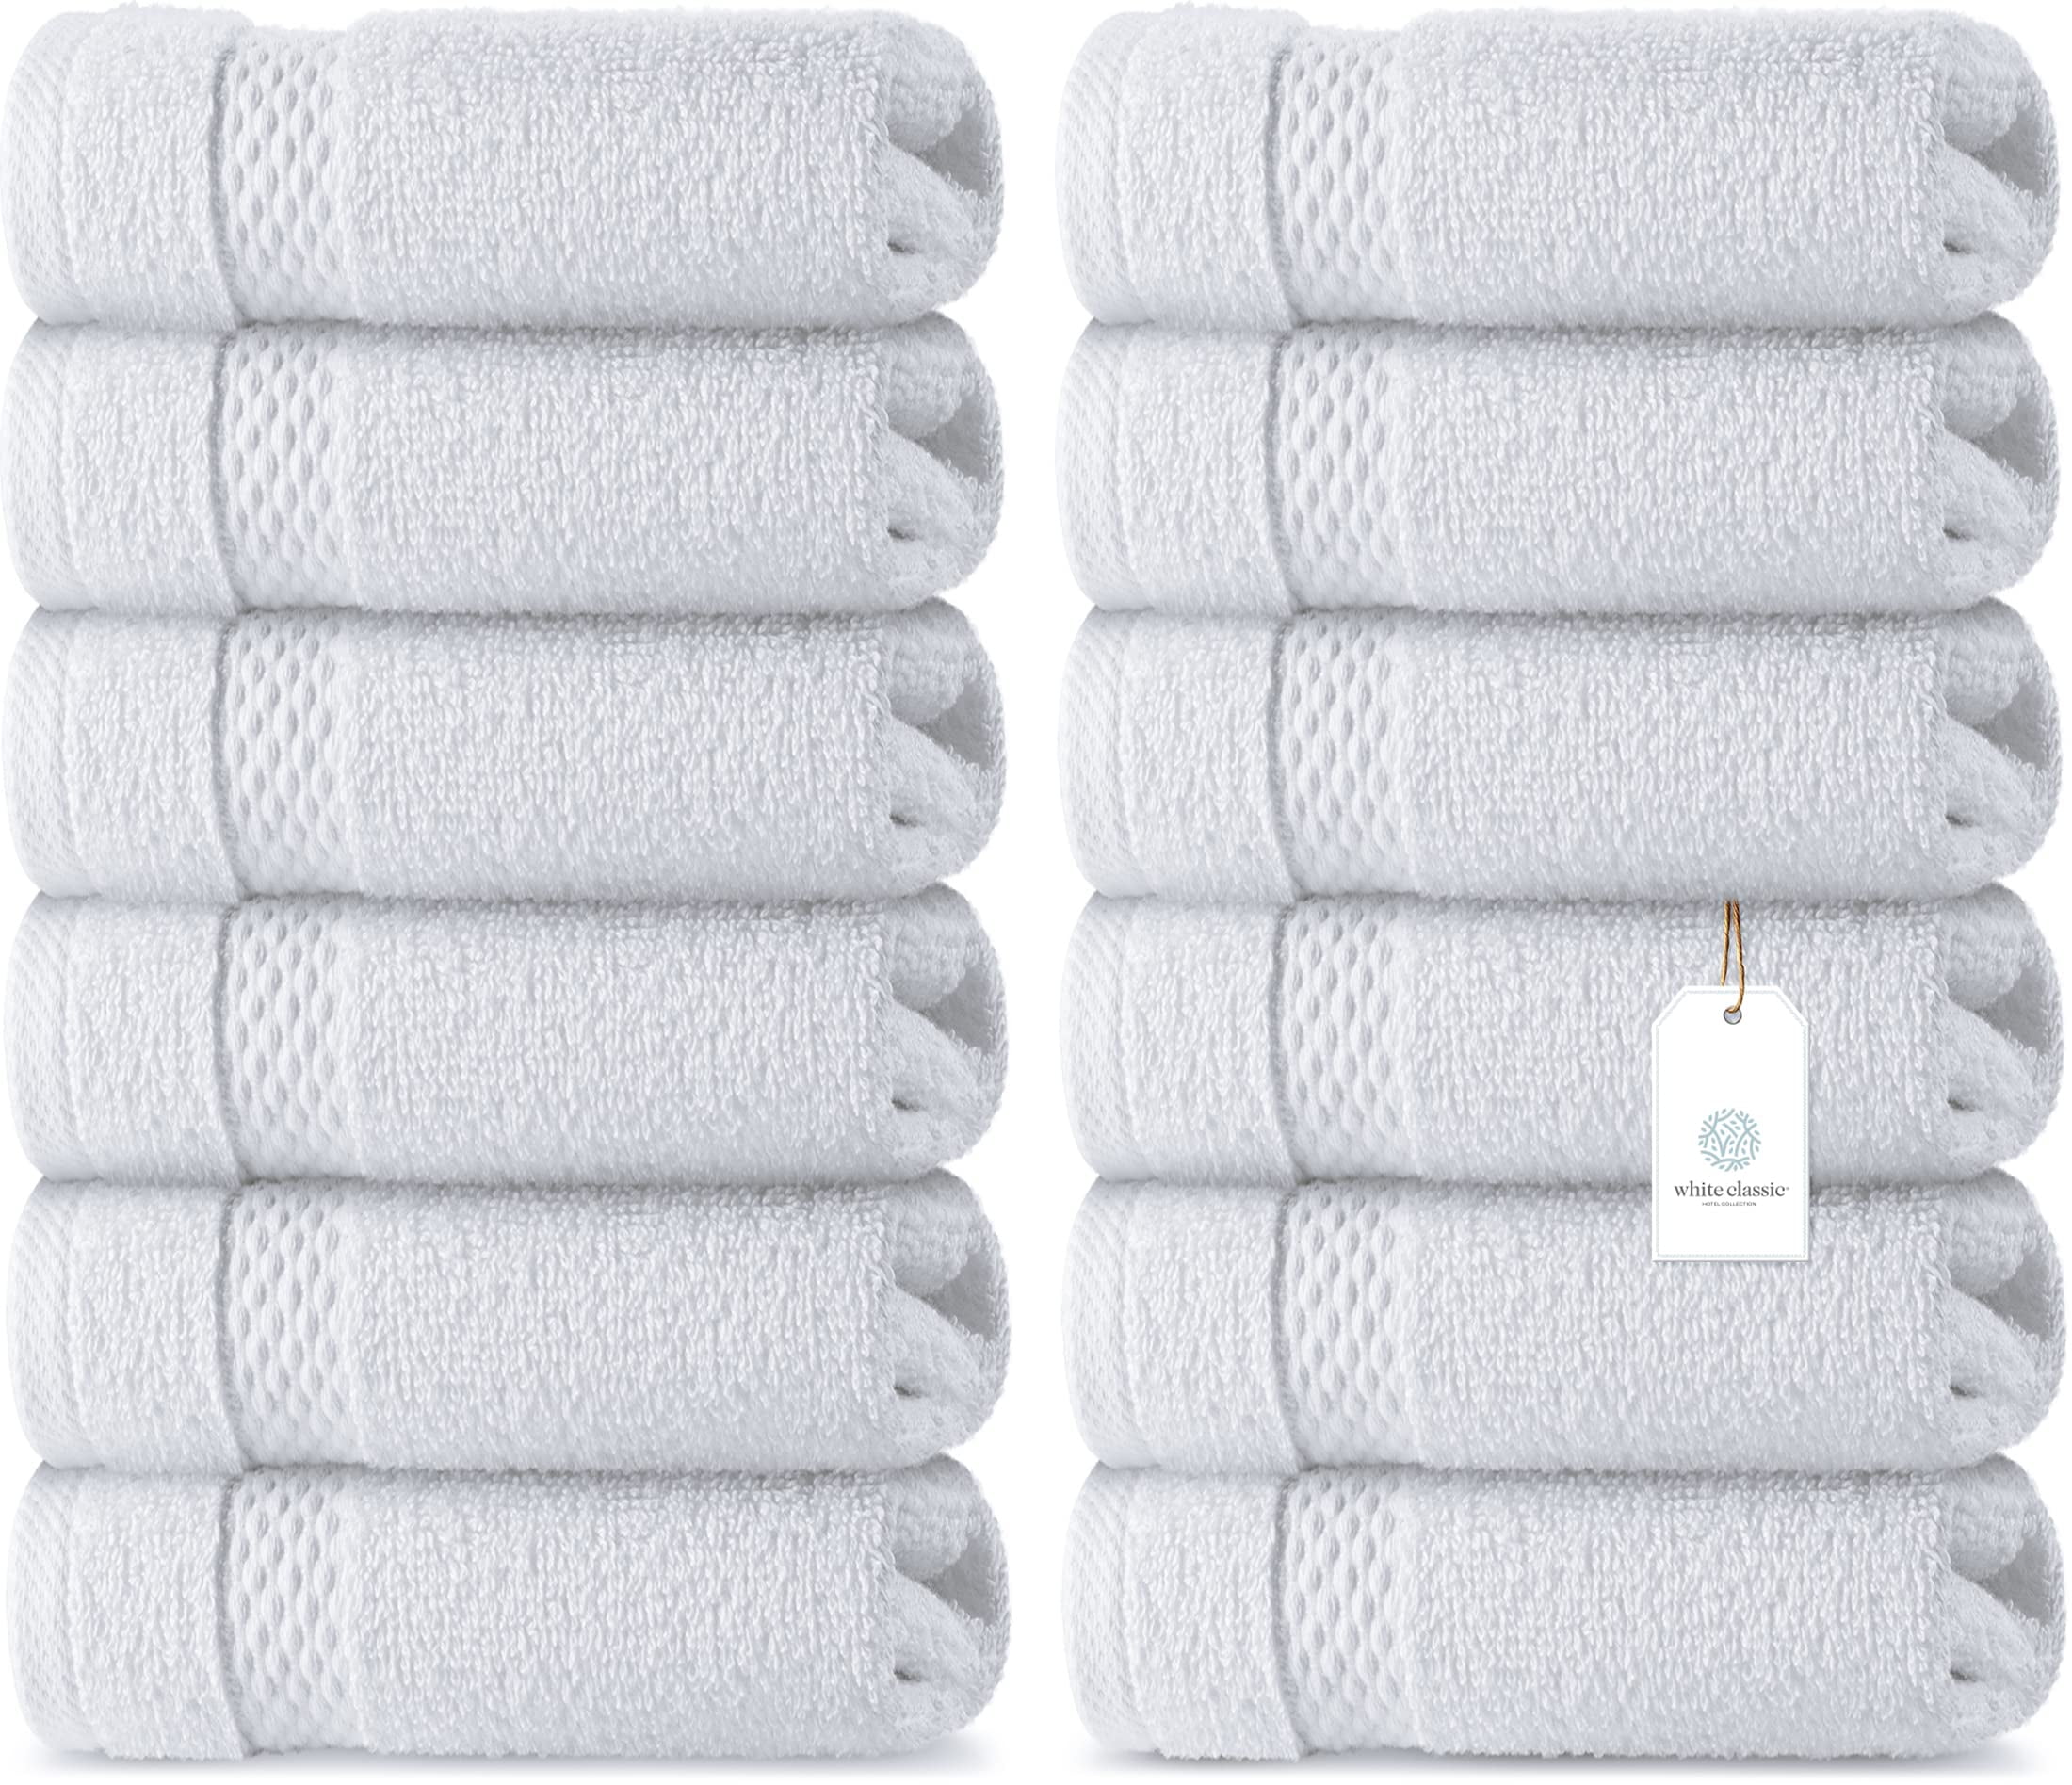 Luxury Hotel Washcloths 100% Egyptian Cotton White Washcloth Set of 12